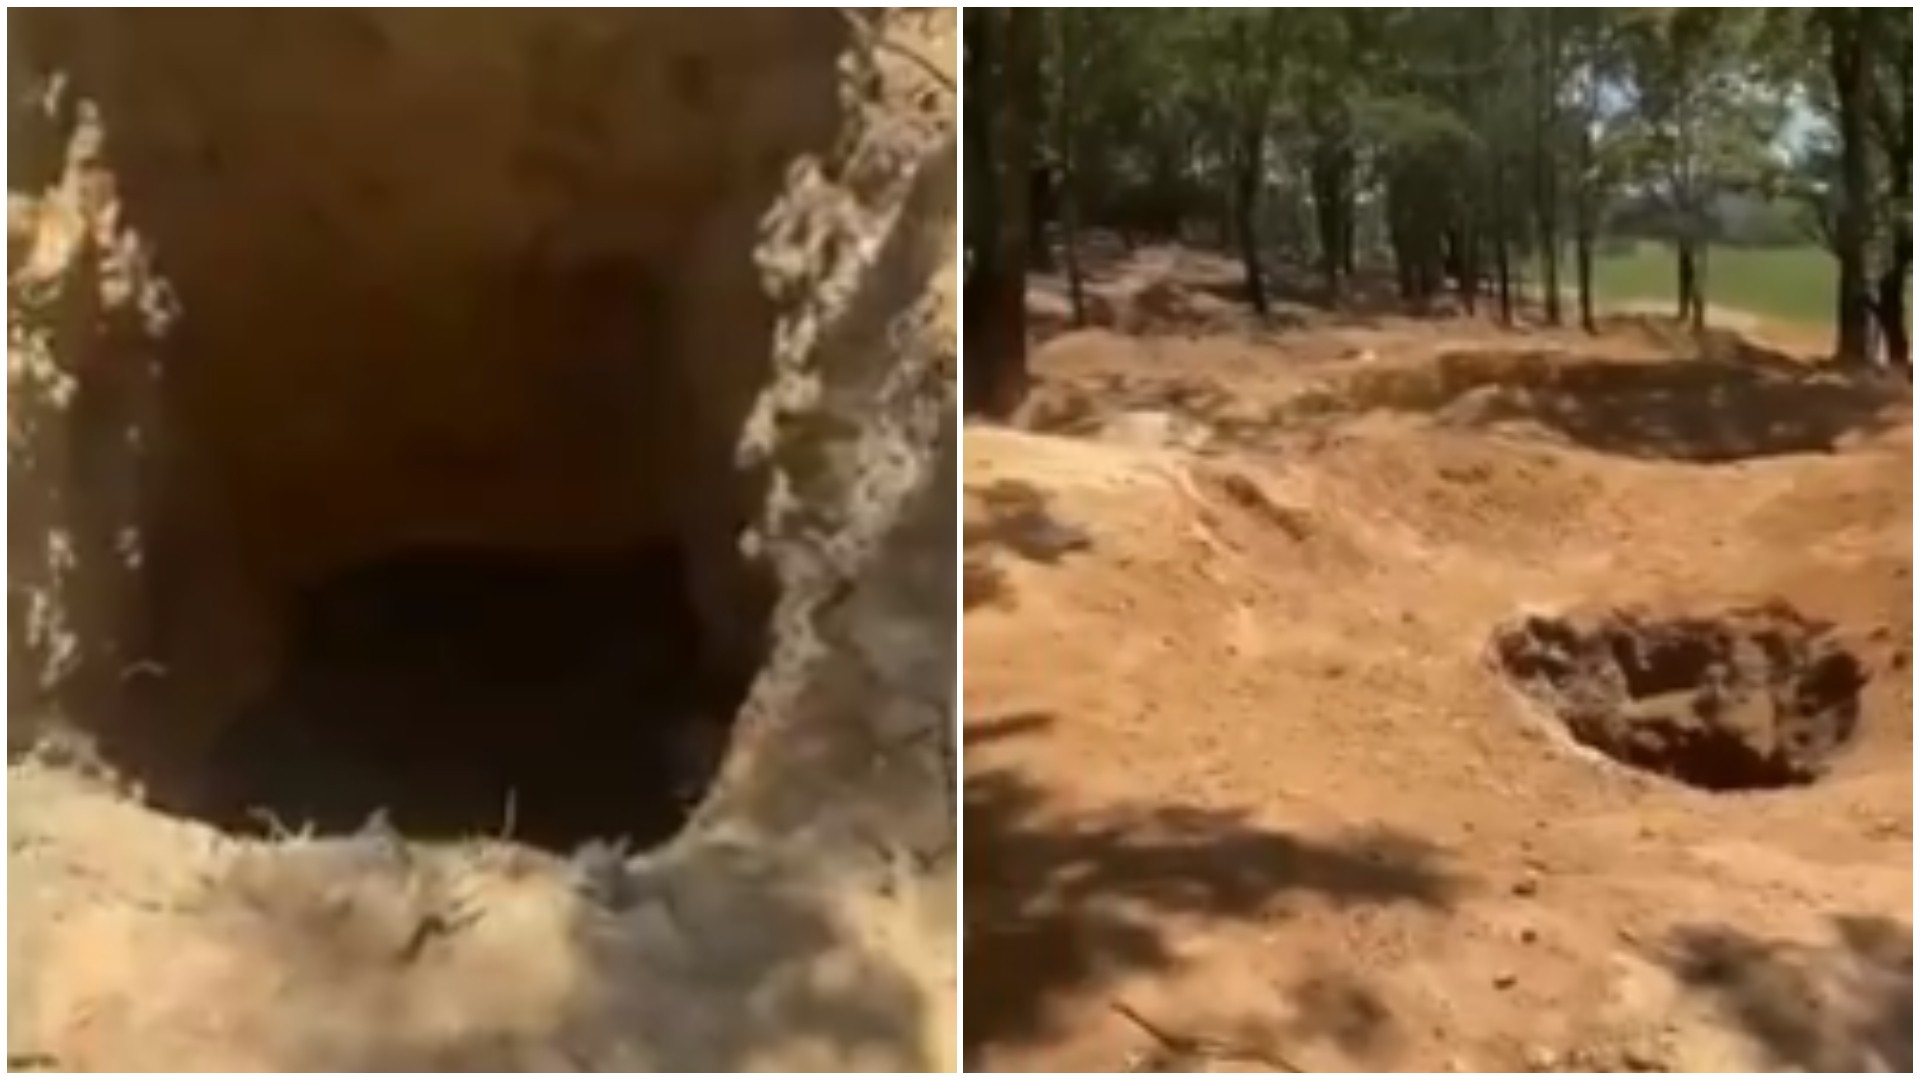 Crateras conectadas por túneis e pedras de quartzo: grupo suspeito de garimpo ilegal é preso em MG